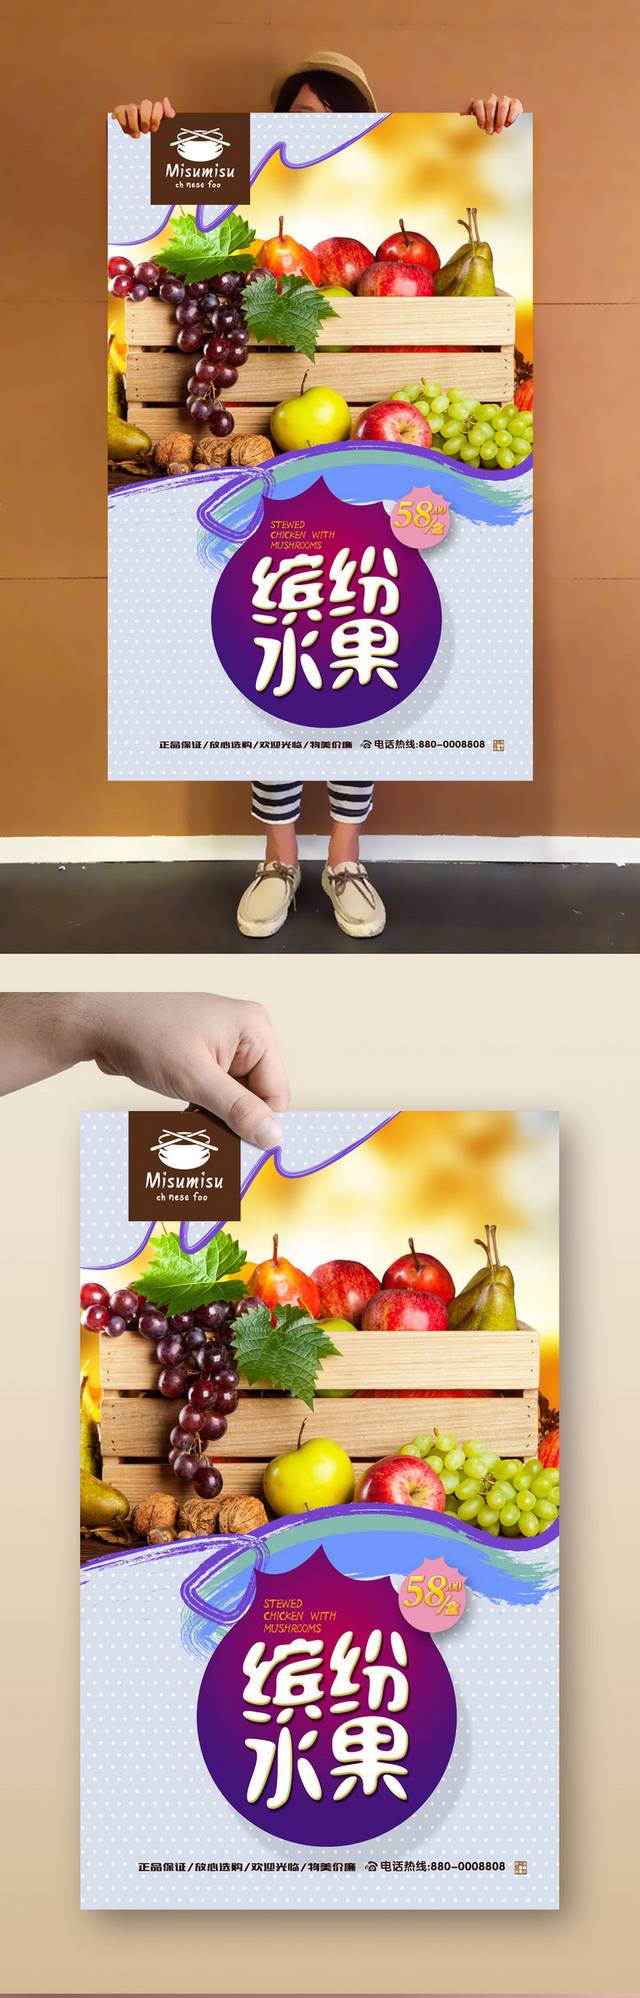 水果广告宣传海报设计